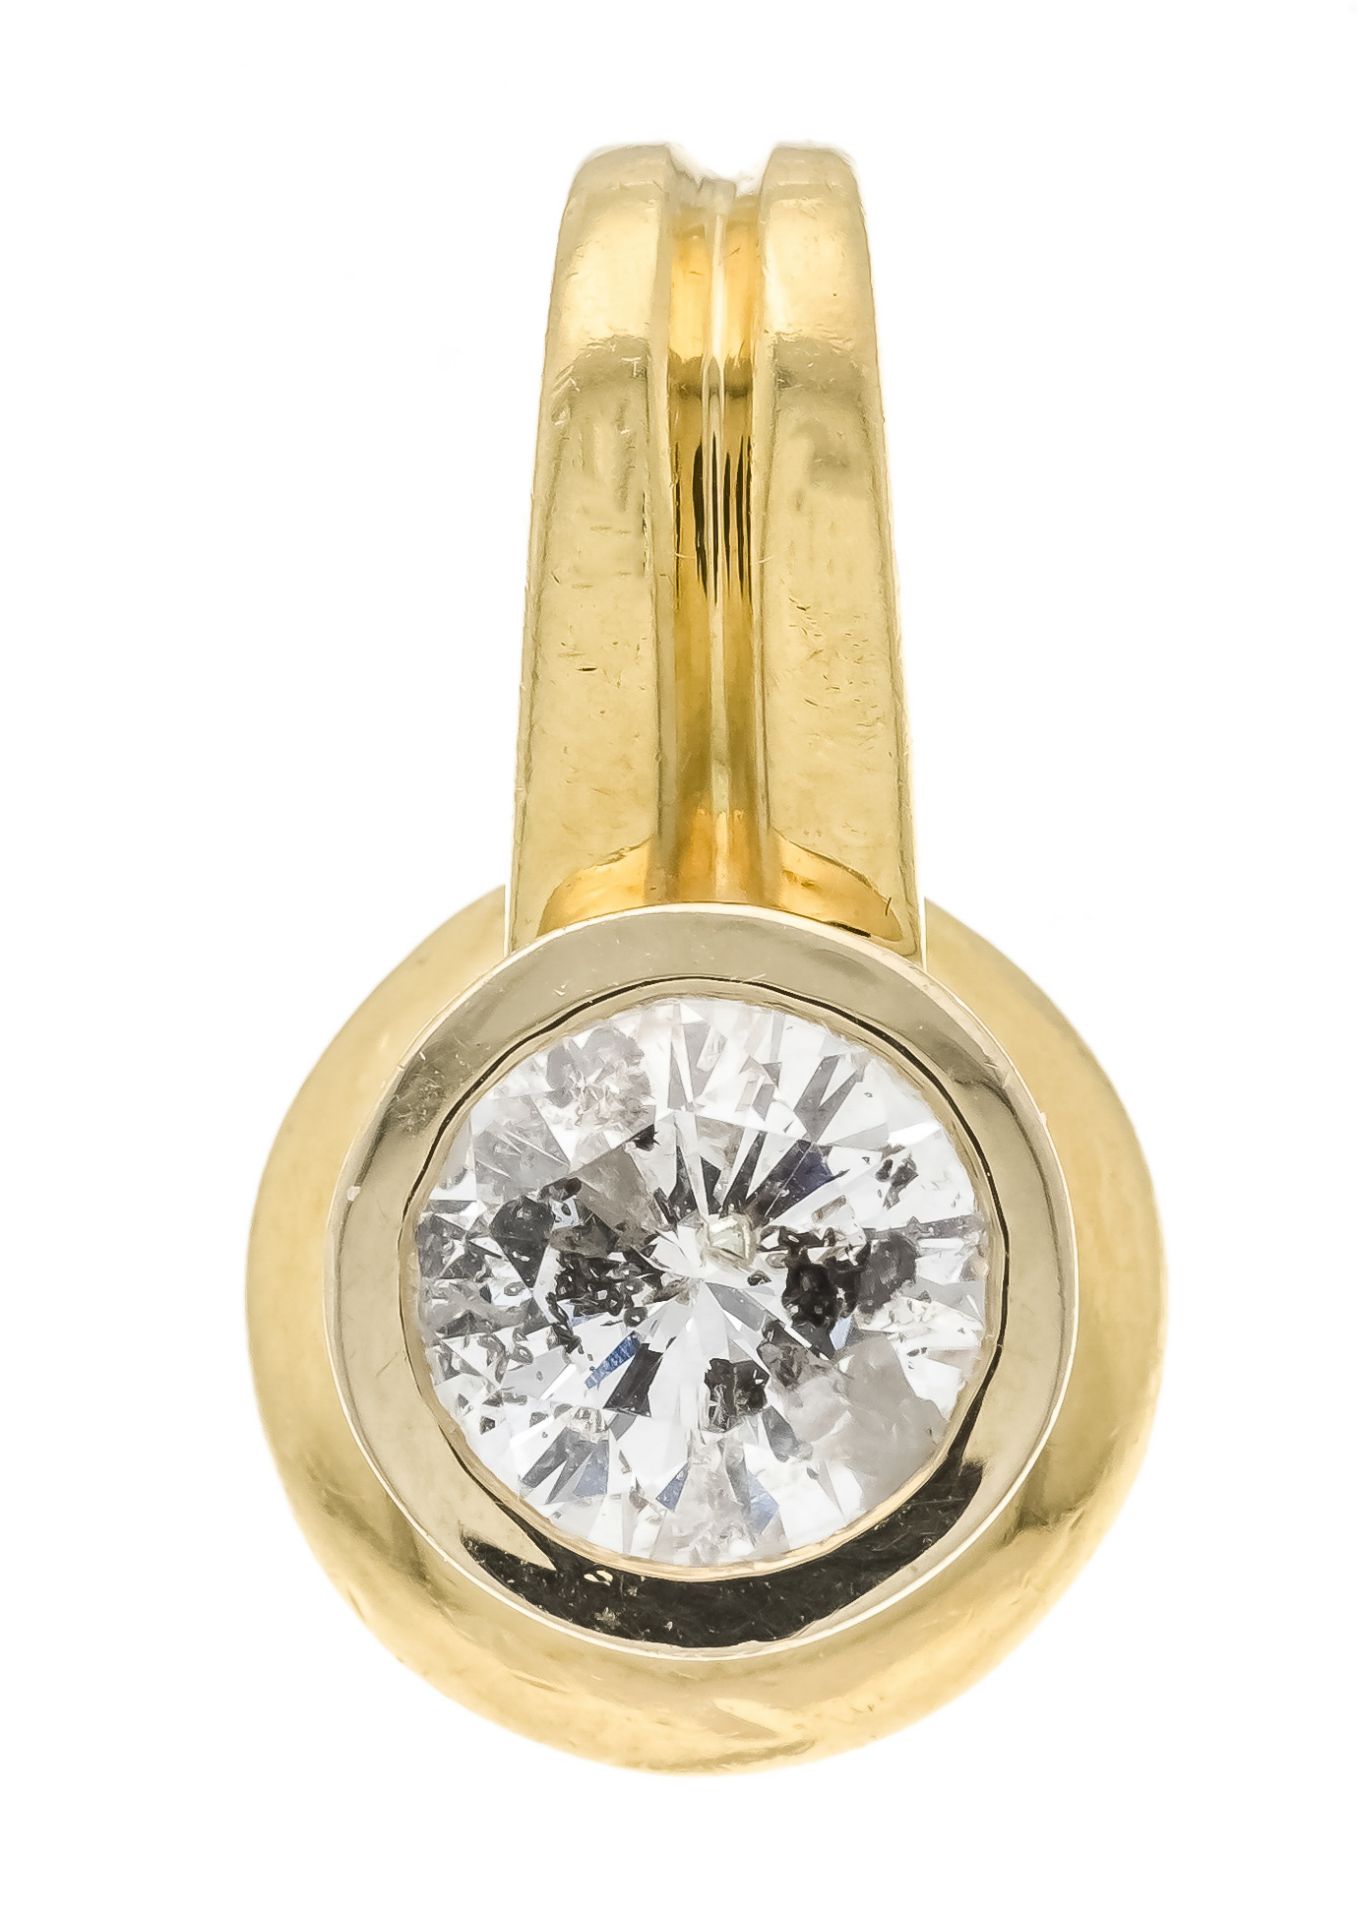 Brilliant-cut diamond solitaire pendant GG 750/000 with one brilliant-cut diamond 0.87 ct slightly